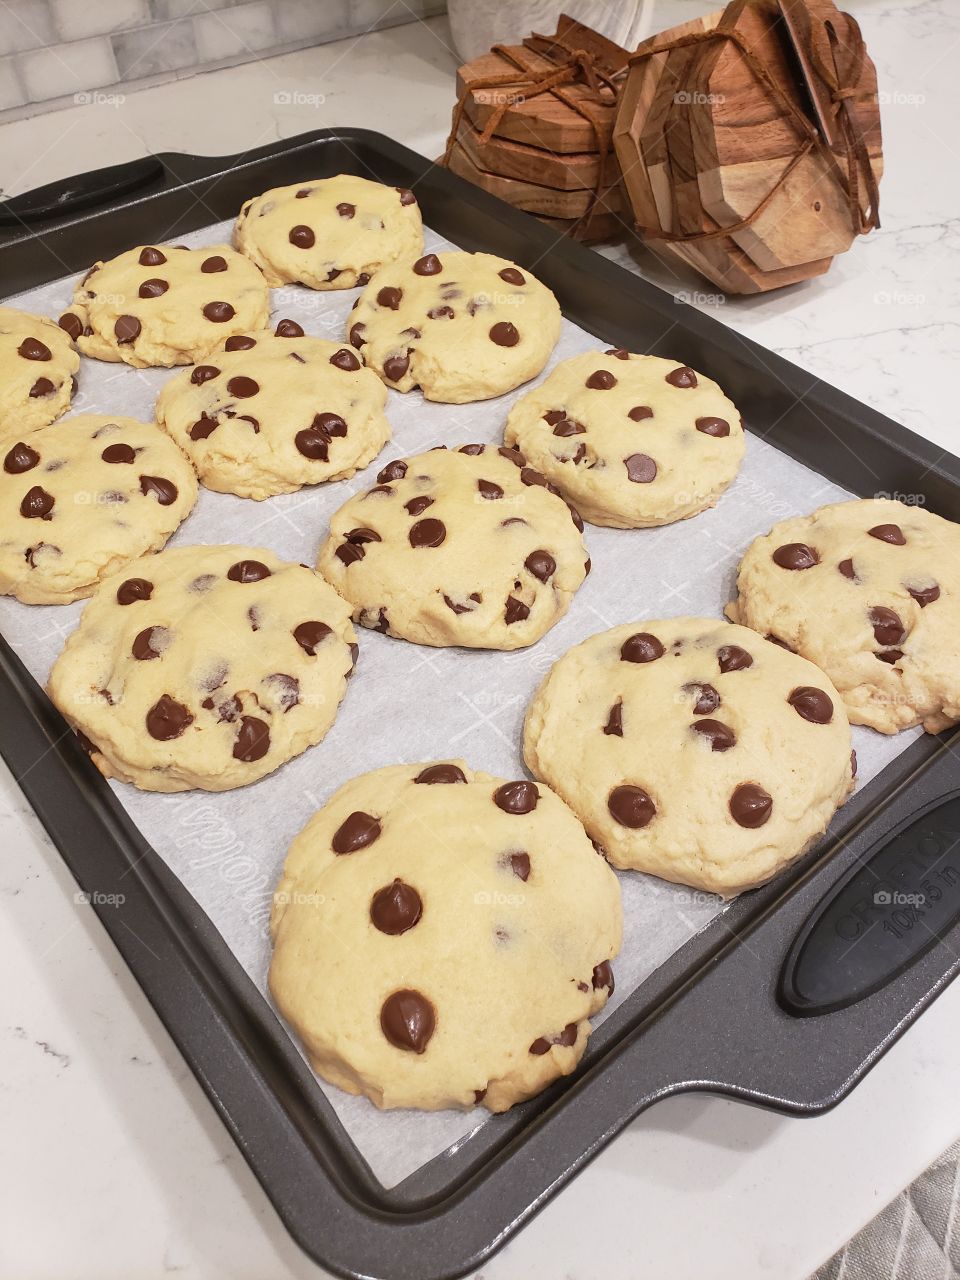 Pan of freshly baked chocolate chip cookies